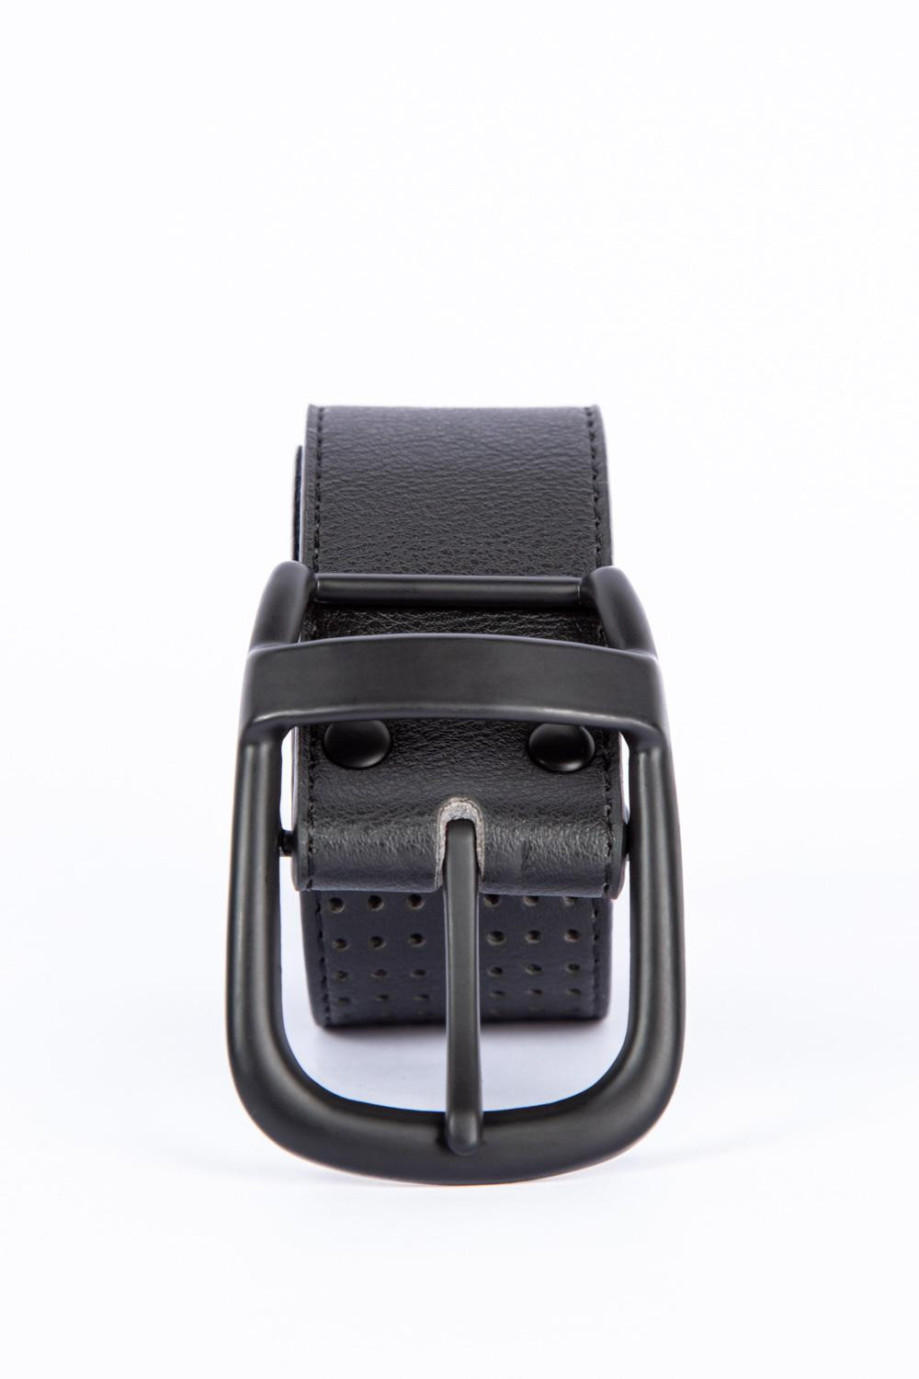 Cinturón sintético negro con hebilla metálica y texturas de puntos